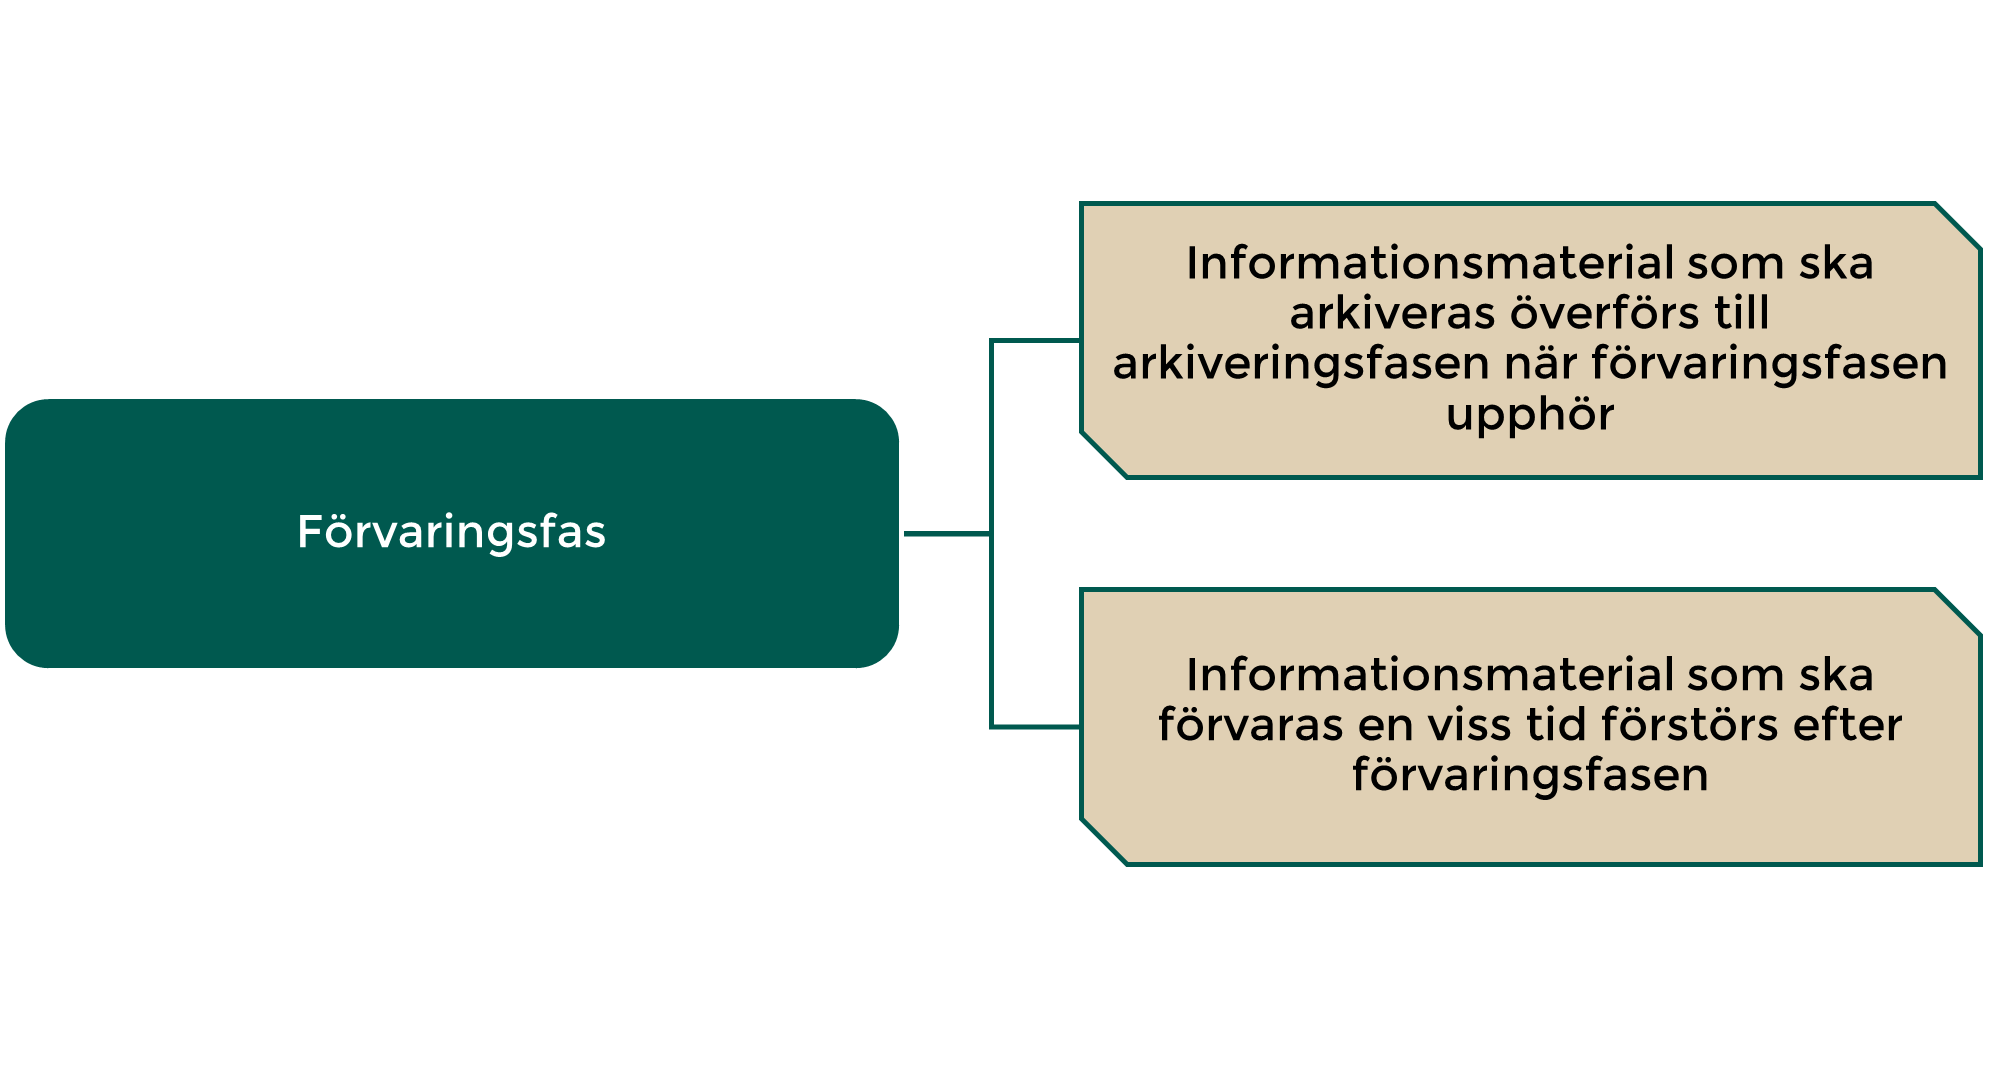 Förvaring och arkivering av informationsmaterial i enlighet med lagen om informationshantering.